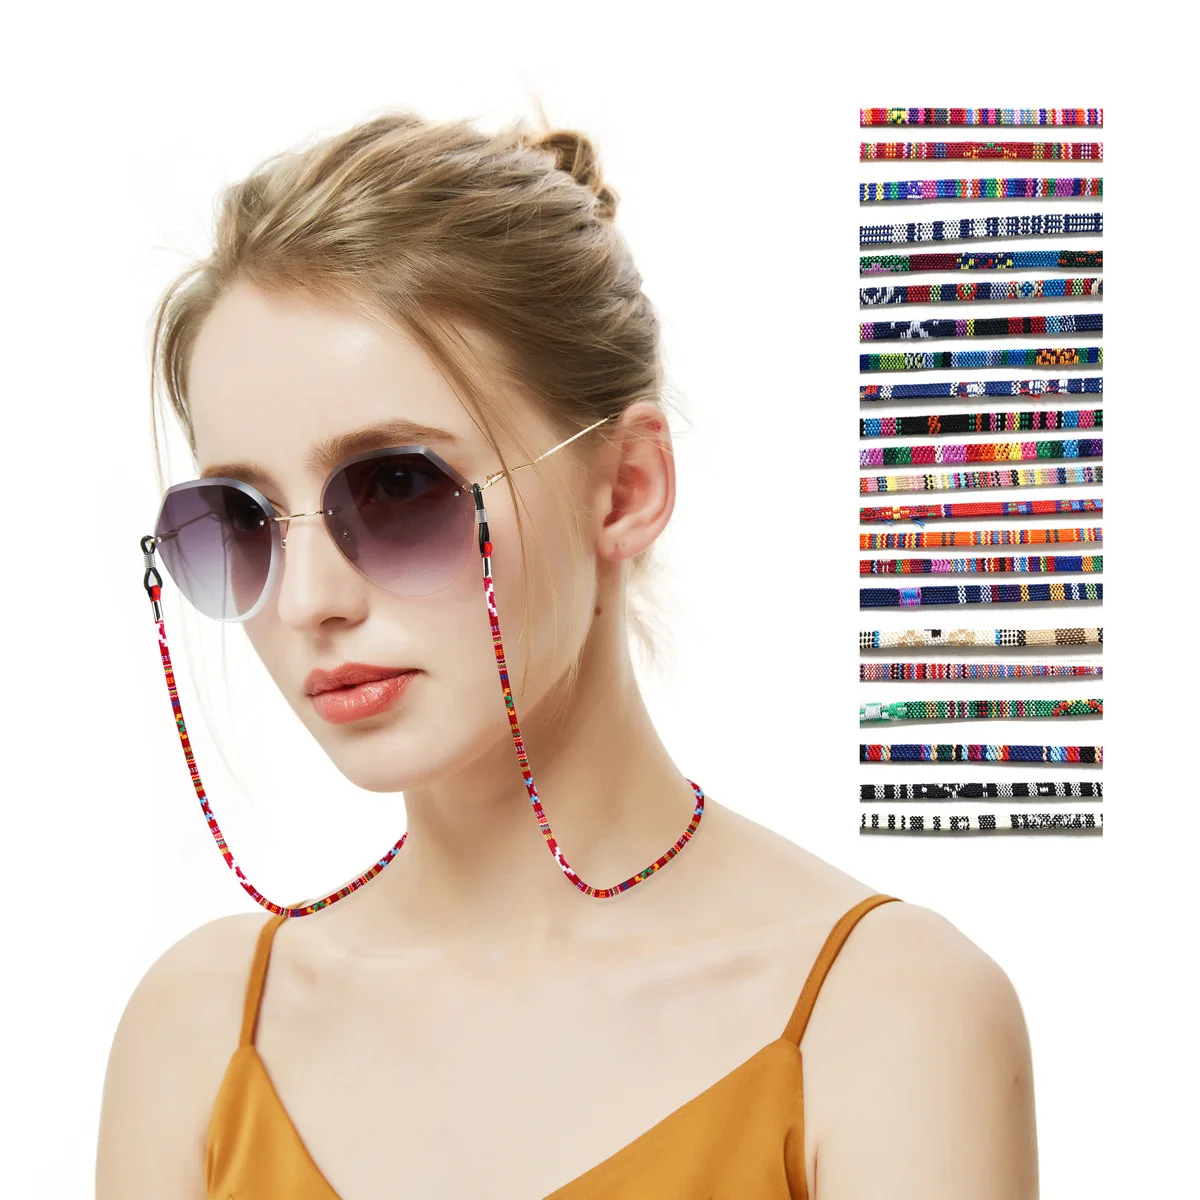 Bongles Nylon duradero de la lente Titular Gafas de retención cordones para gafas portátil Cadenas Lentes correas 12pcs-colorido 